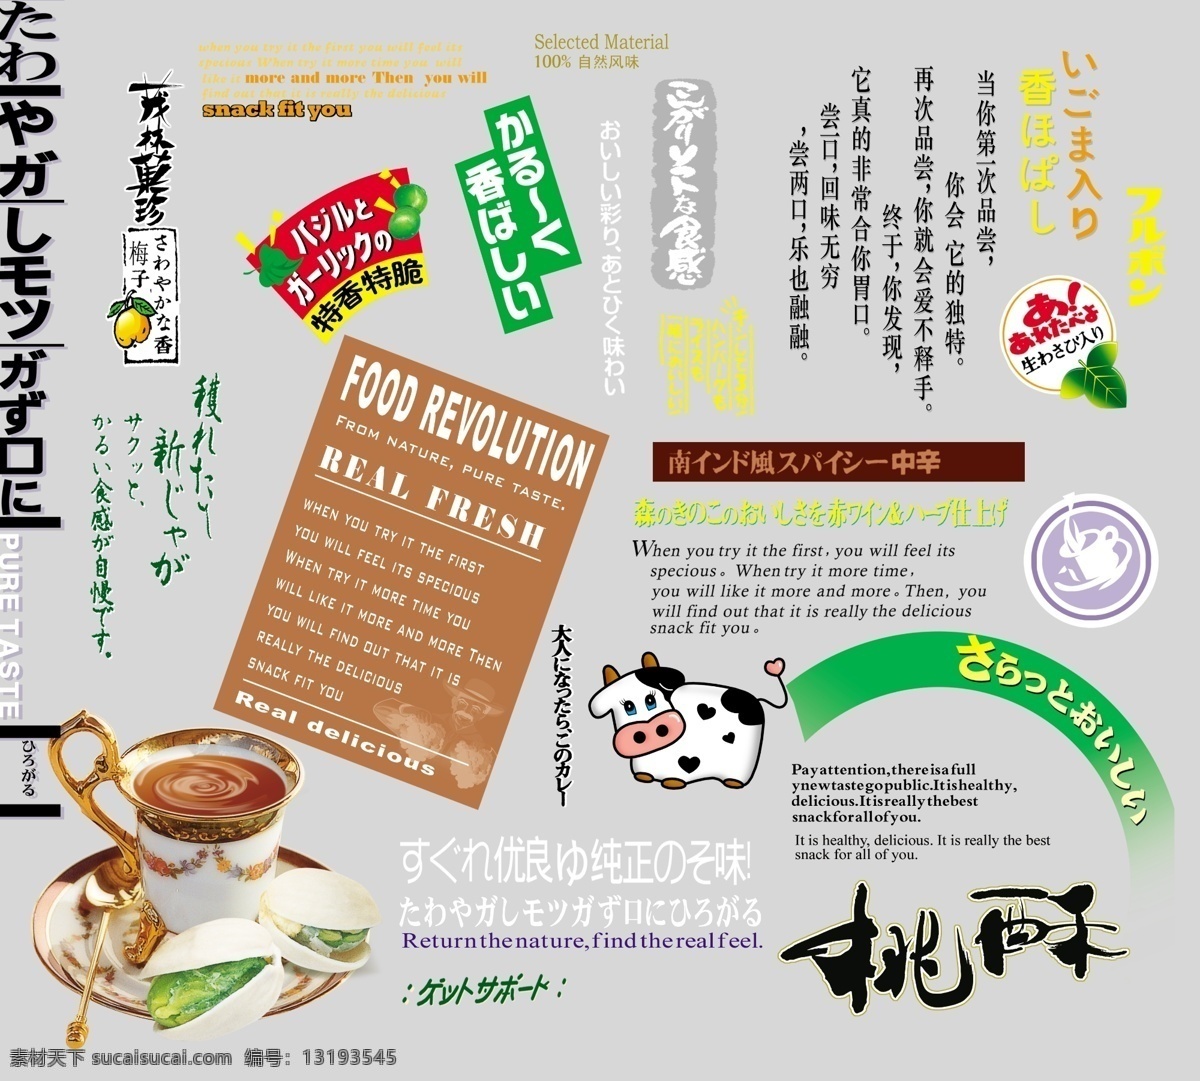 字 模版 艺术 杯子 卡通牛 梅子 日文 桃酥 艺术字 食品零食广告 psd源文件